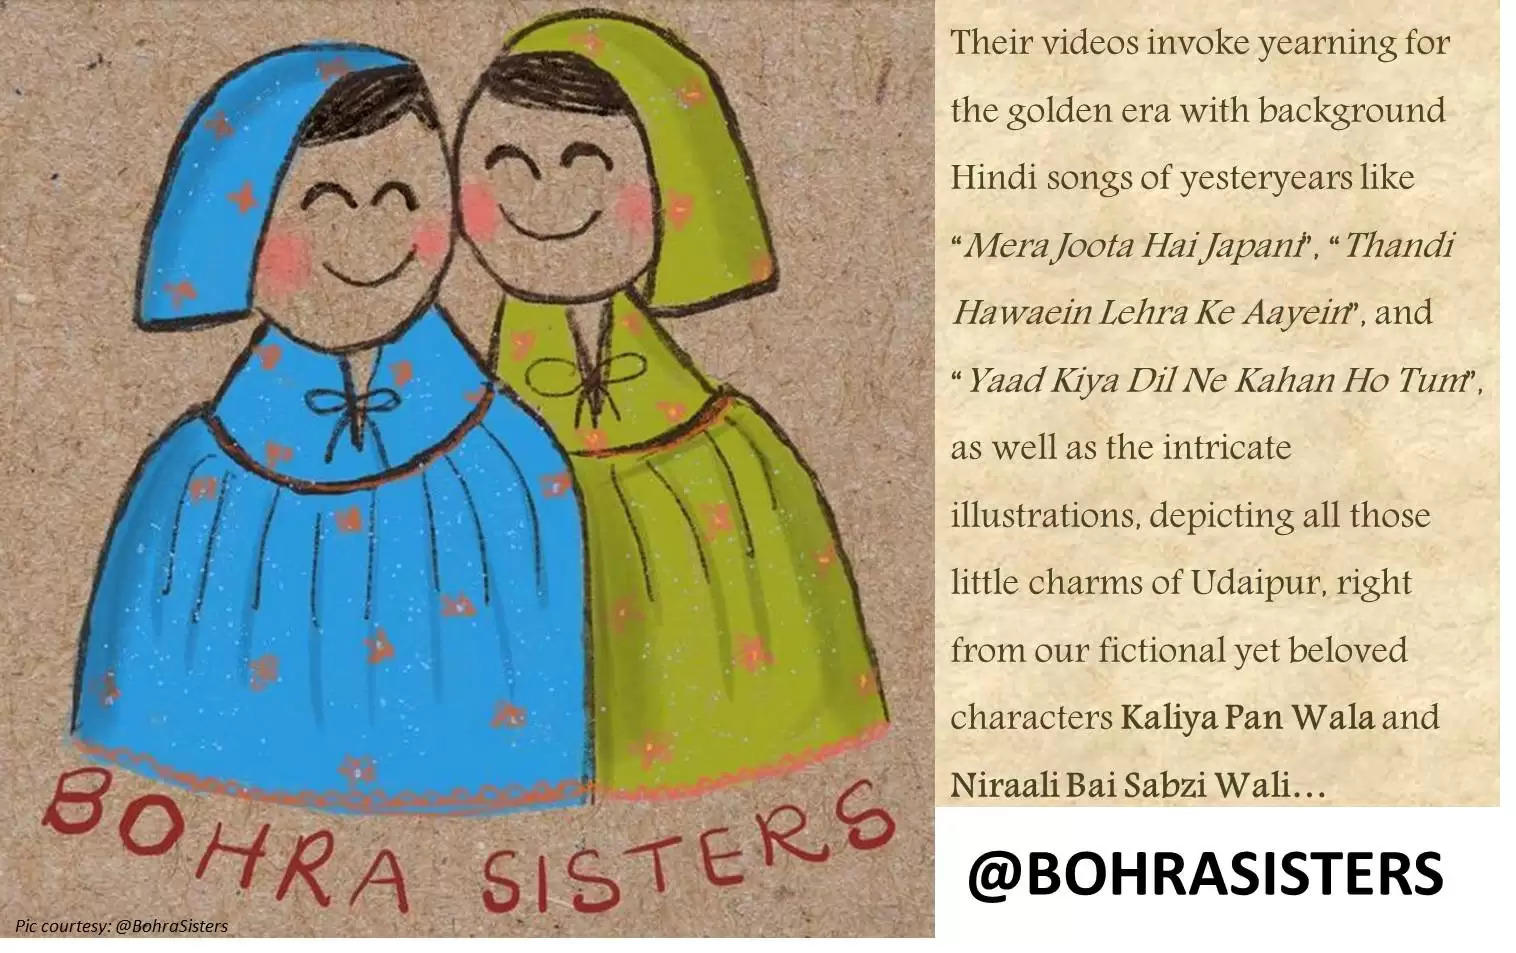 bohra sisters udaipur, bohrasisters, instagram hit stories, KKR stories, haitaiyaar, stopmotionanimation #animation #stopmotion #illustration #bollywood #indianartist #oldbollywoodsongs #retro #handmade #indianbloggers #indianart #indianlifestyle #indianmusic